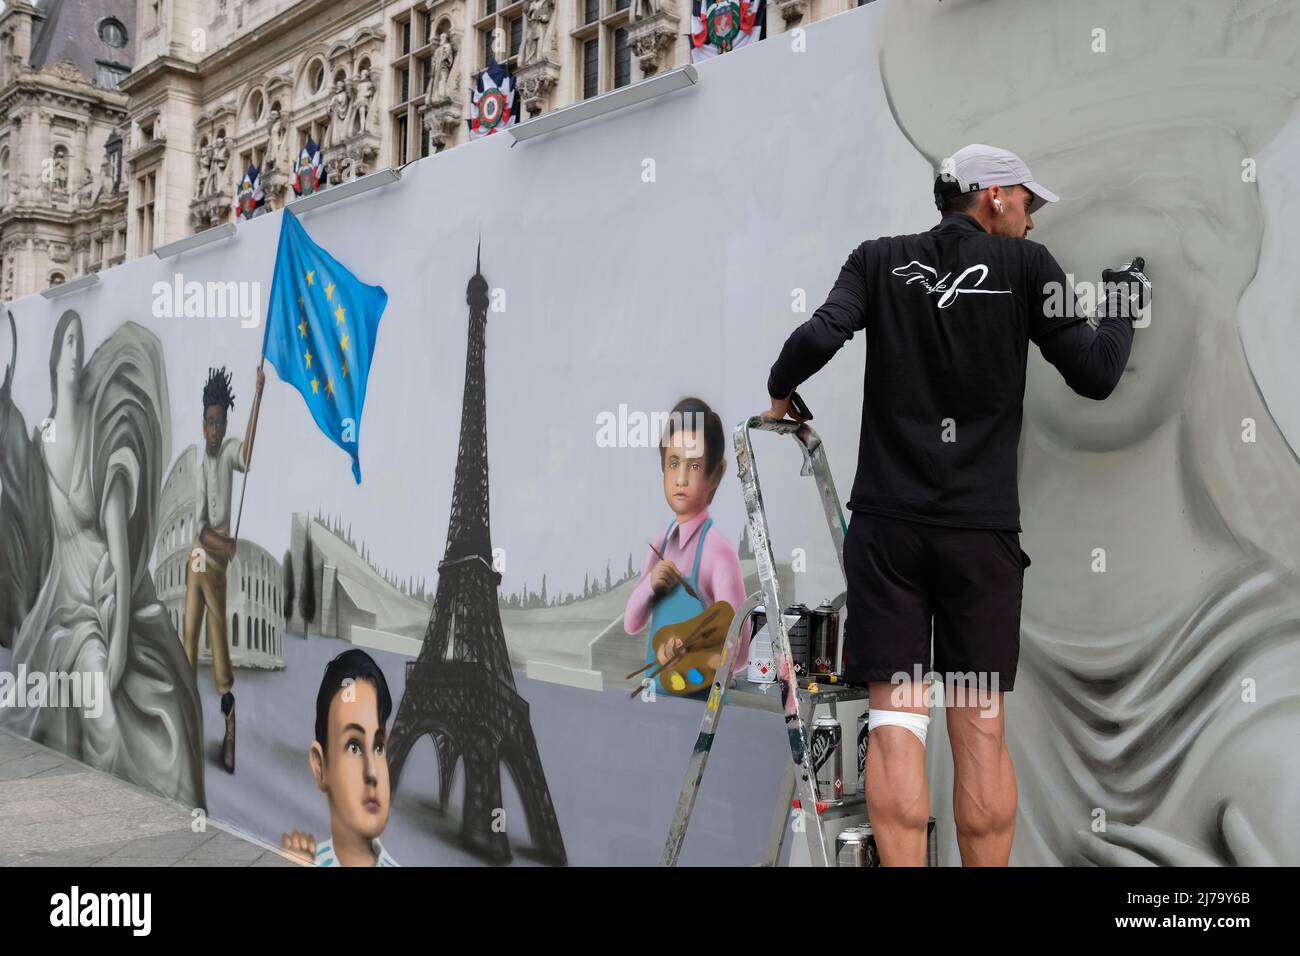 Sabato 7 maggio è stata organizzata una Giornata dell'Europa nella piazza di fronte al municipio di Parigi, con stand per ONG e una sala conferenze Foto Stock